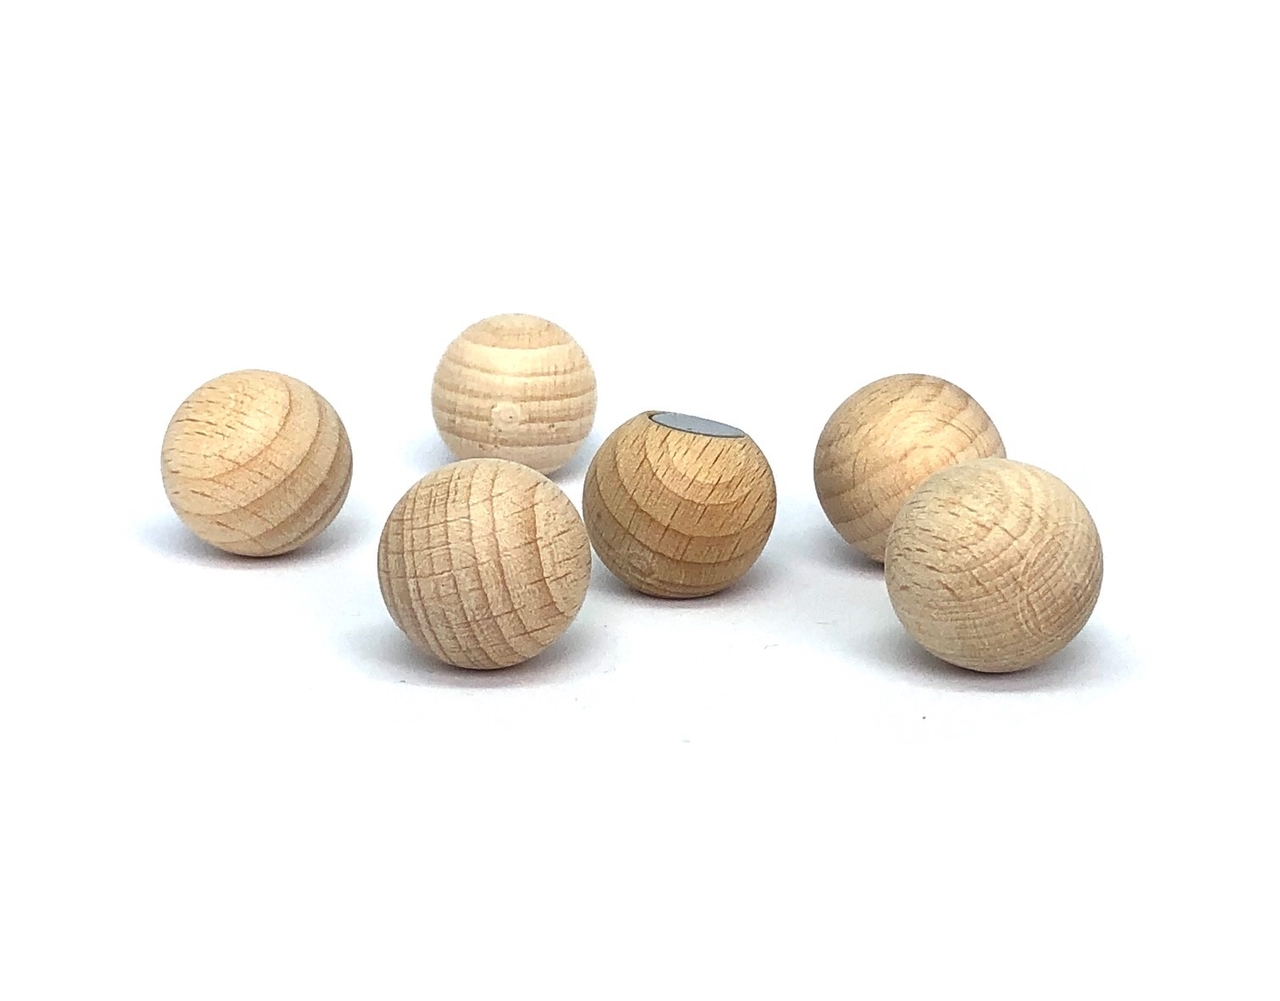 kloon matchmaker toon Sterke houten magneetballen 20 mm - set van 6 stuks - Magneet-verf.nl